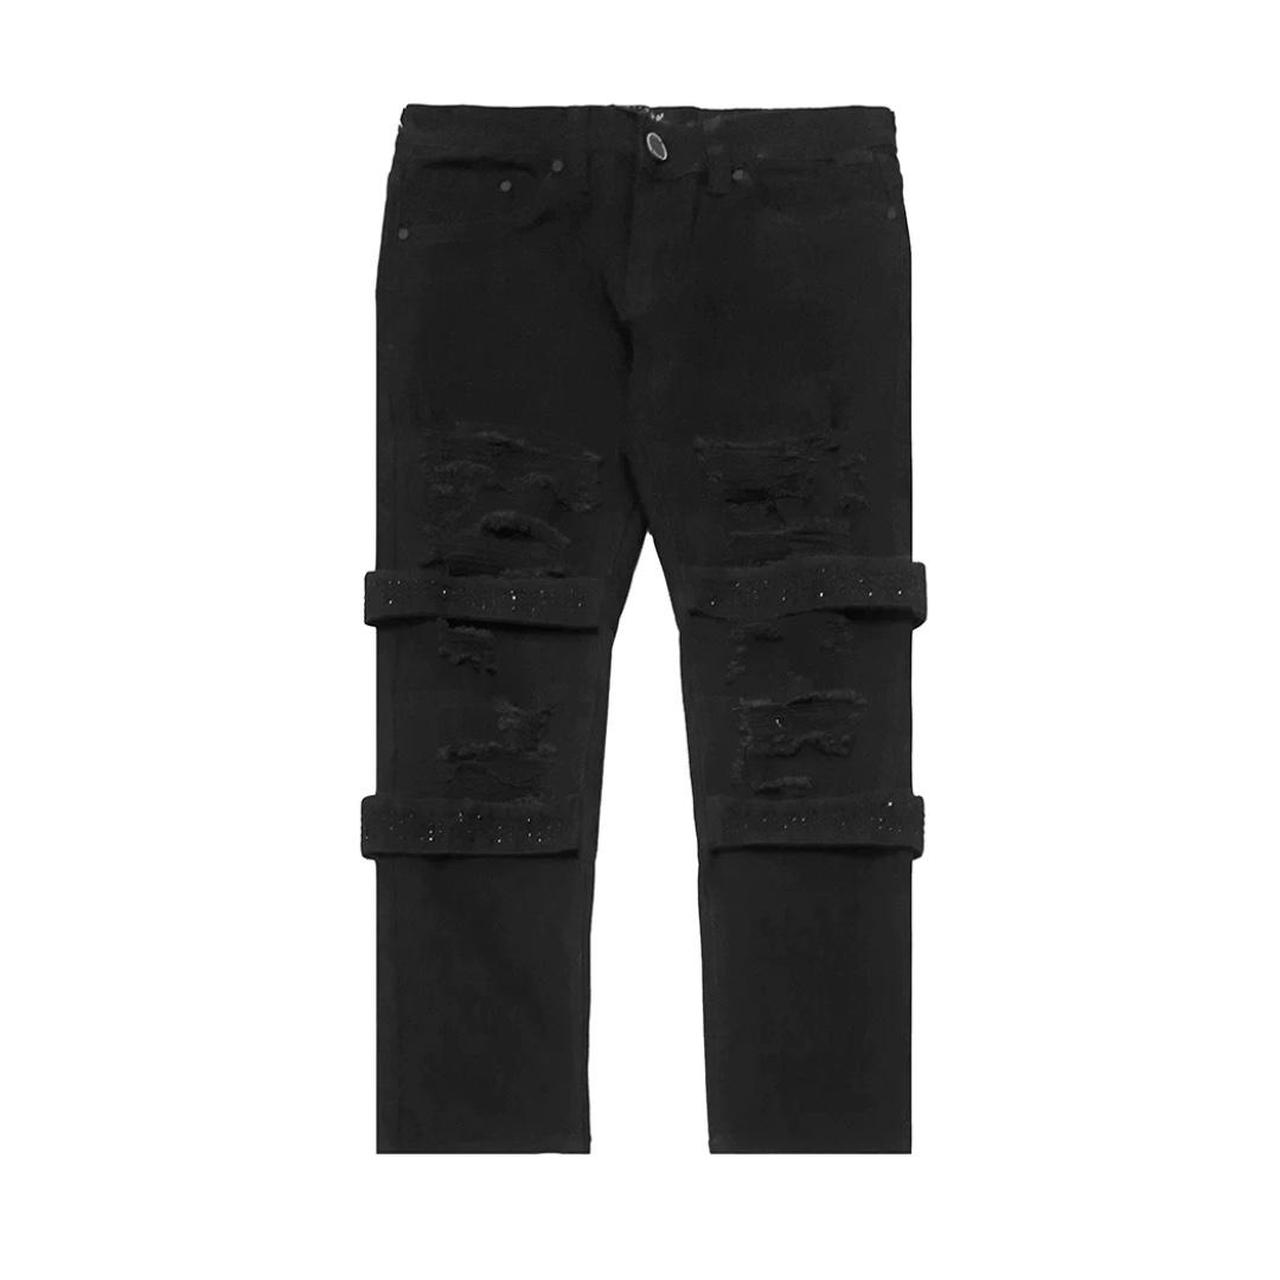 Men's Grey and Black Jeans | Depop